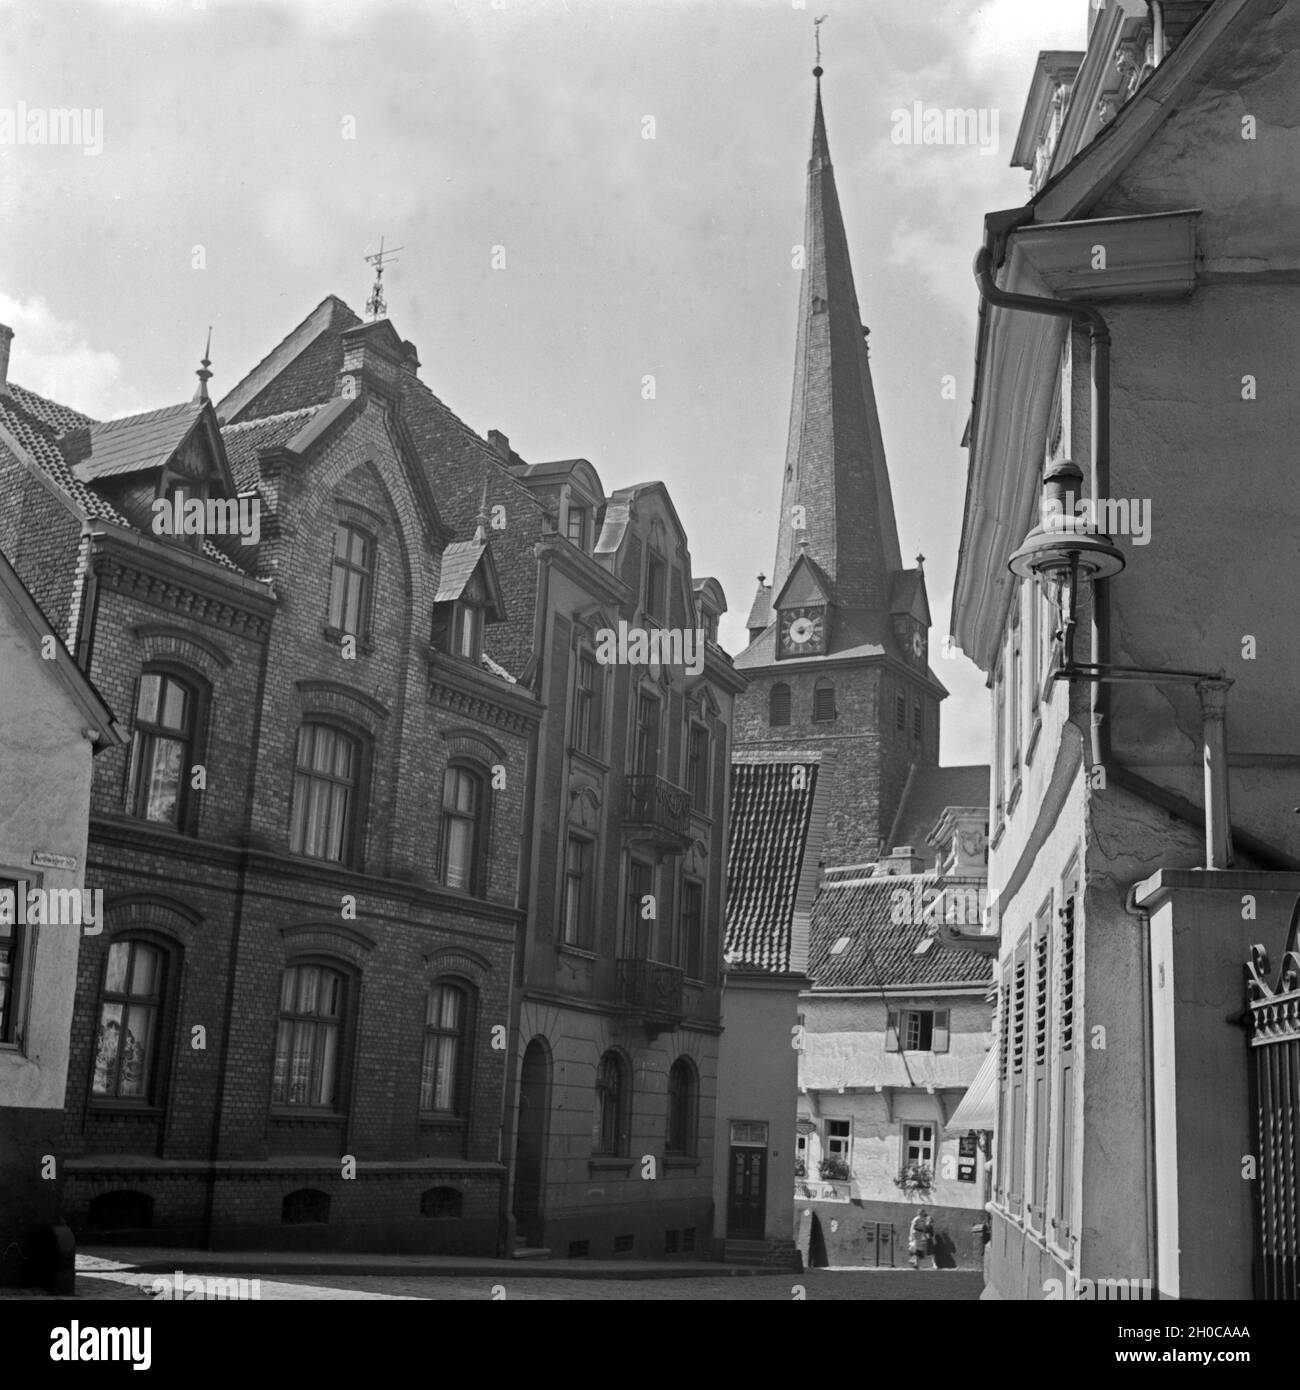 Die evangelische Petrikirche a Mülheim an der Ruhr, Deutschland 1930er Jahre. I protestanti chiesa di San Pietro a Muelheim, Germania 1930s. Foto Stock